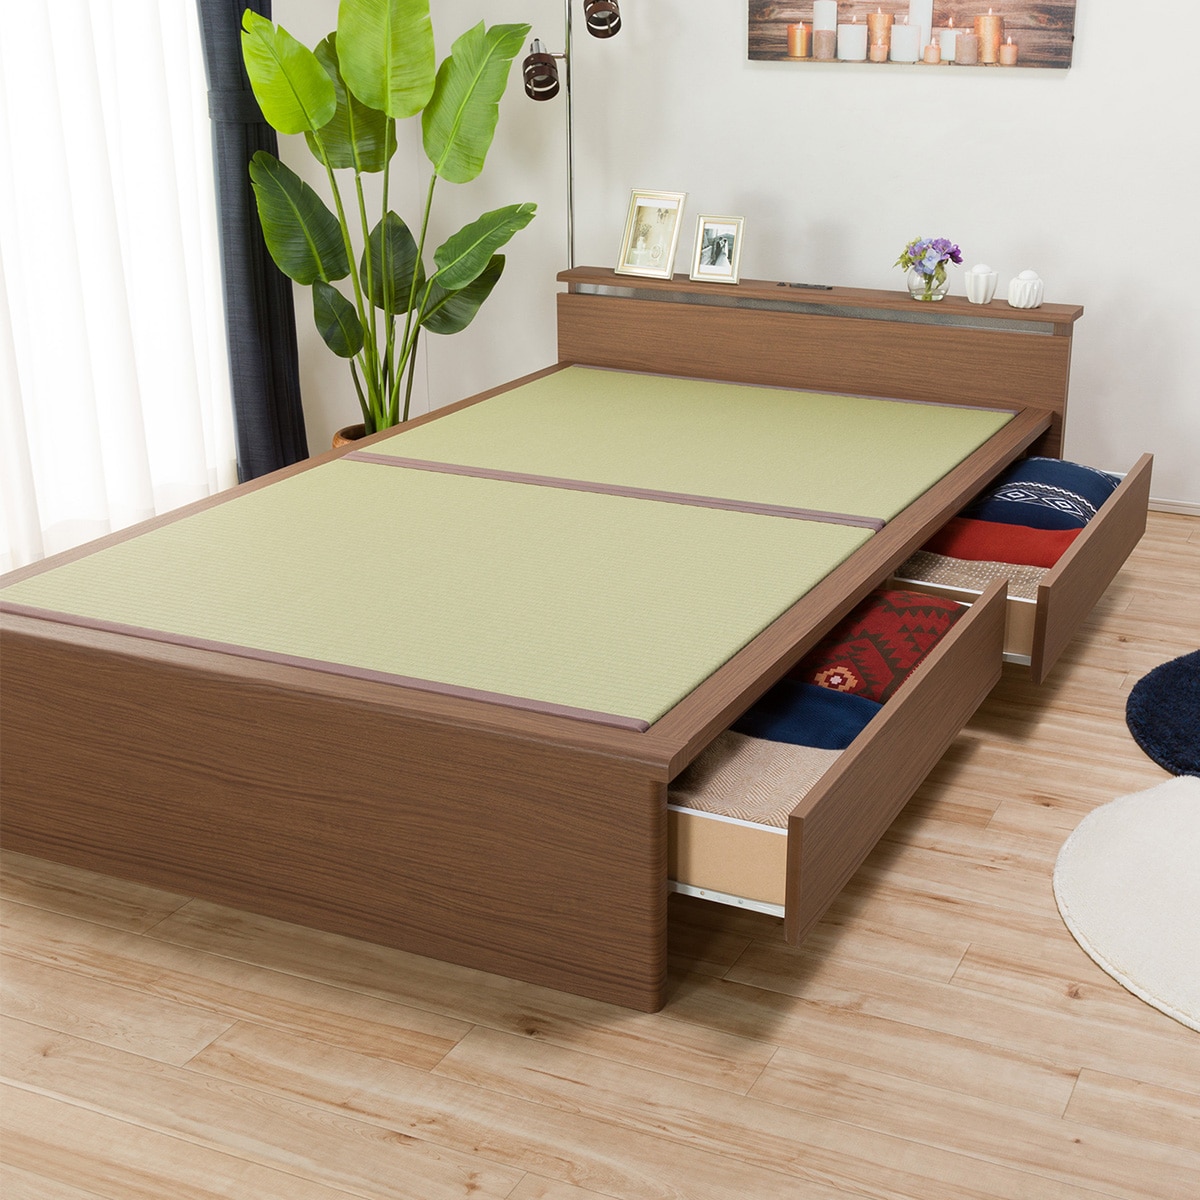 セミダブル畳ベッド(シデン JP-C38 引出し付き/MBR)通販 | ニトリネット【公式】 家具・インテリア通販